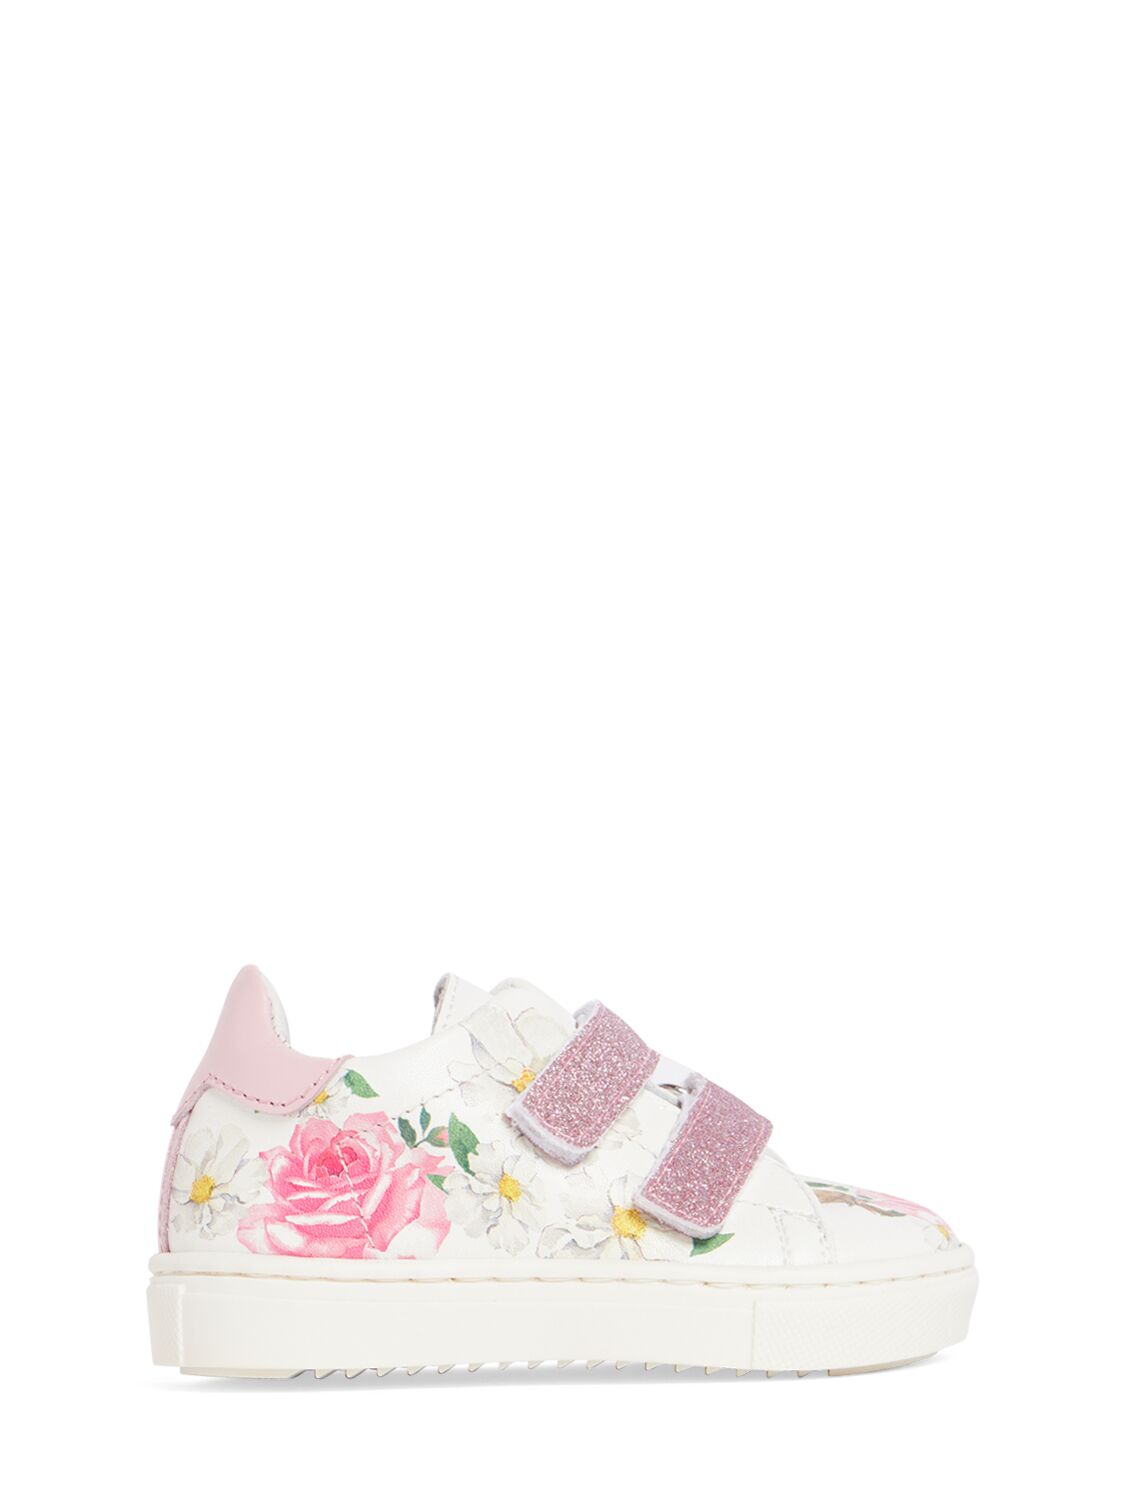 Image of Flower Printed Sneakers